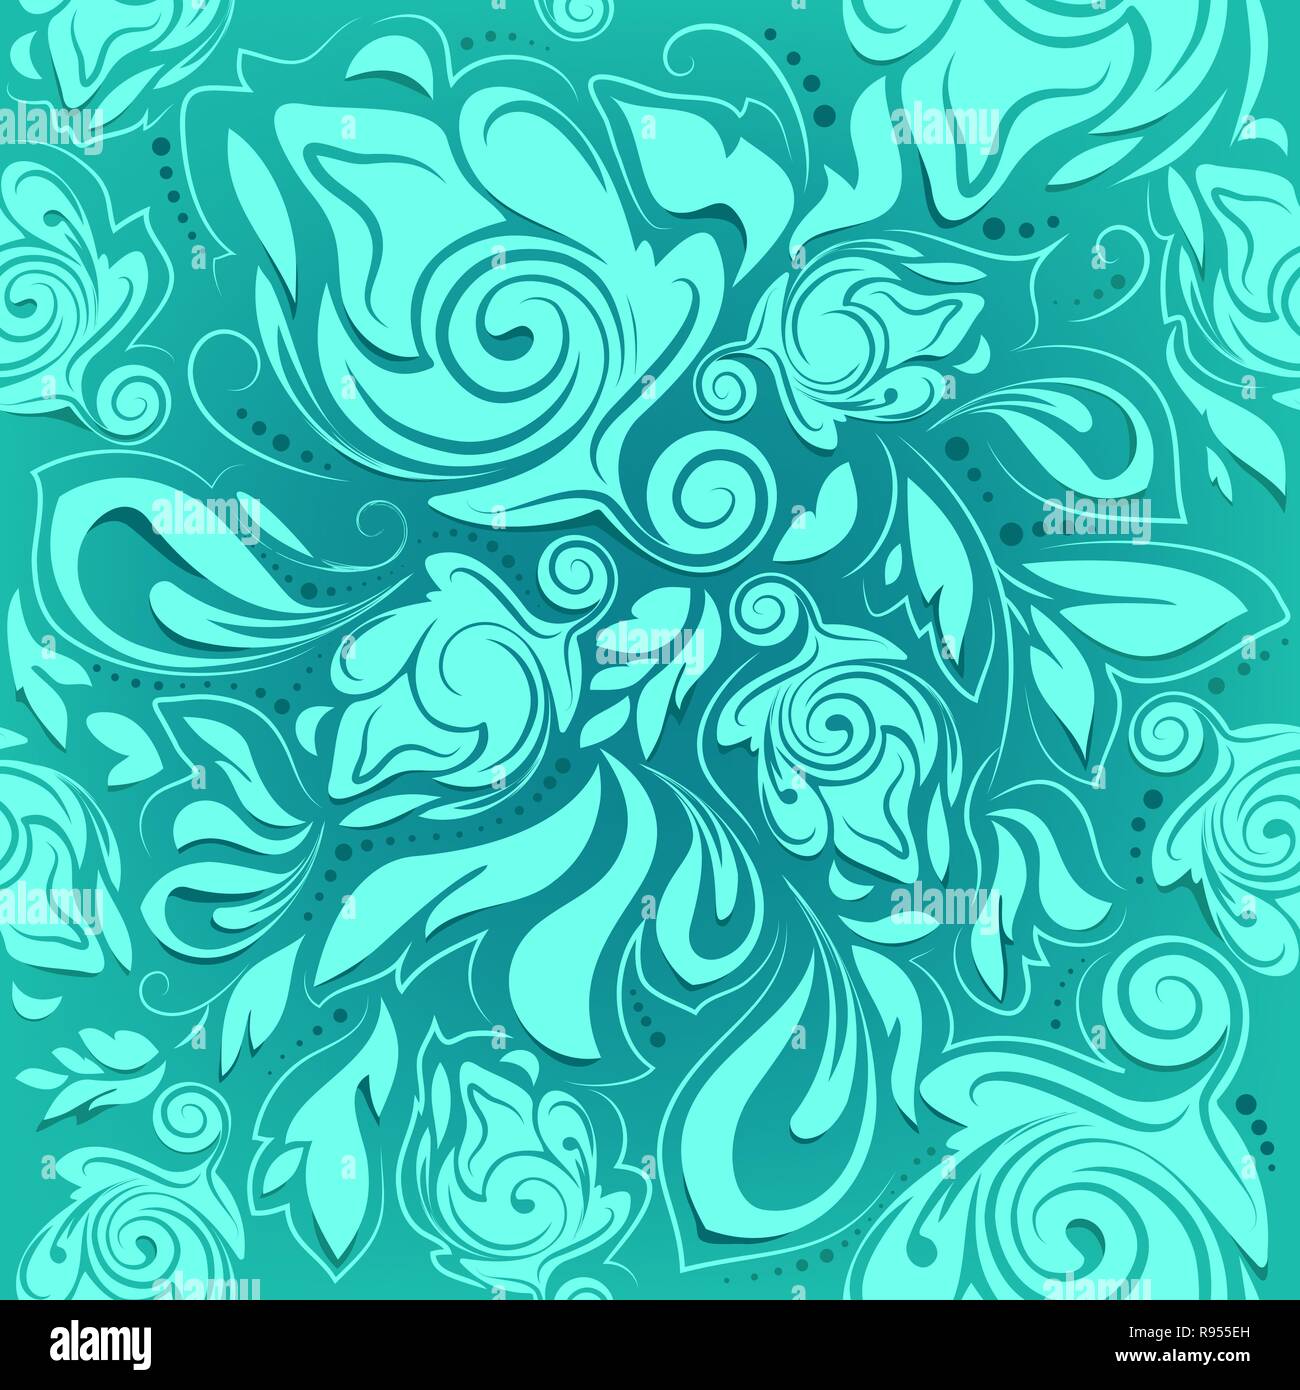 Motif floral, transparente turquoise abstract background Illustration de Vecteur